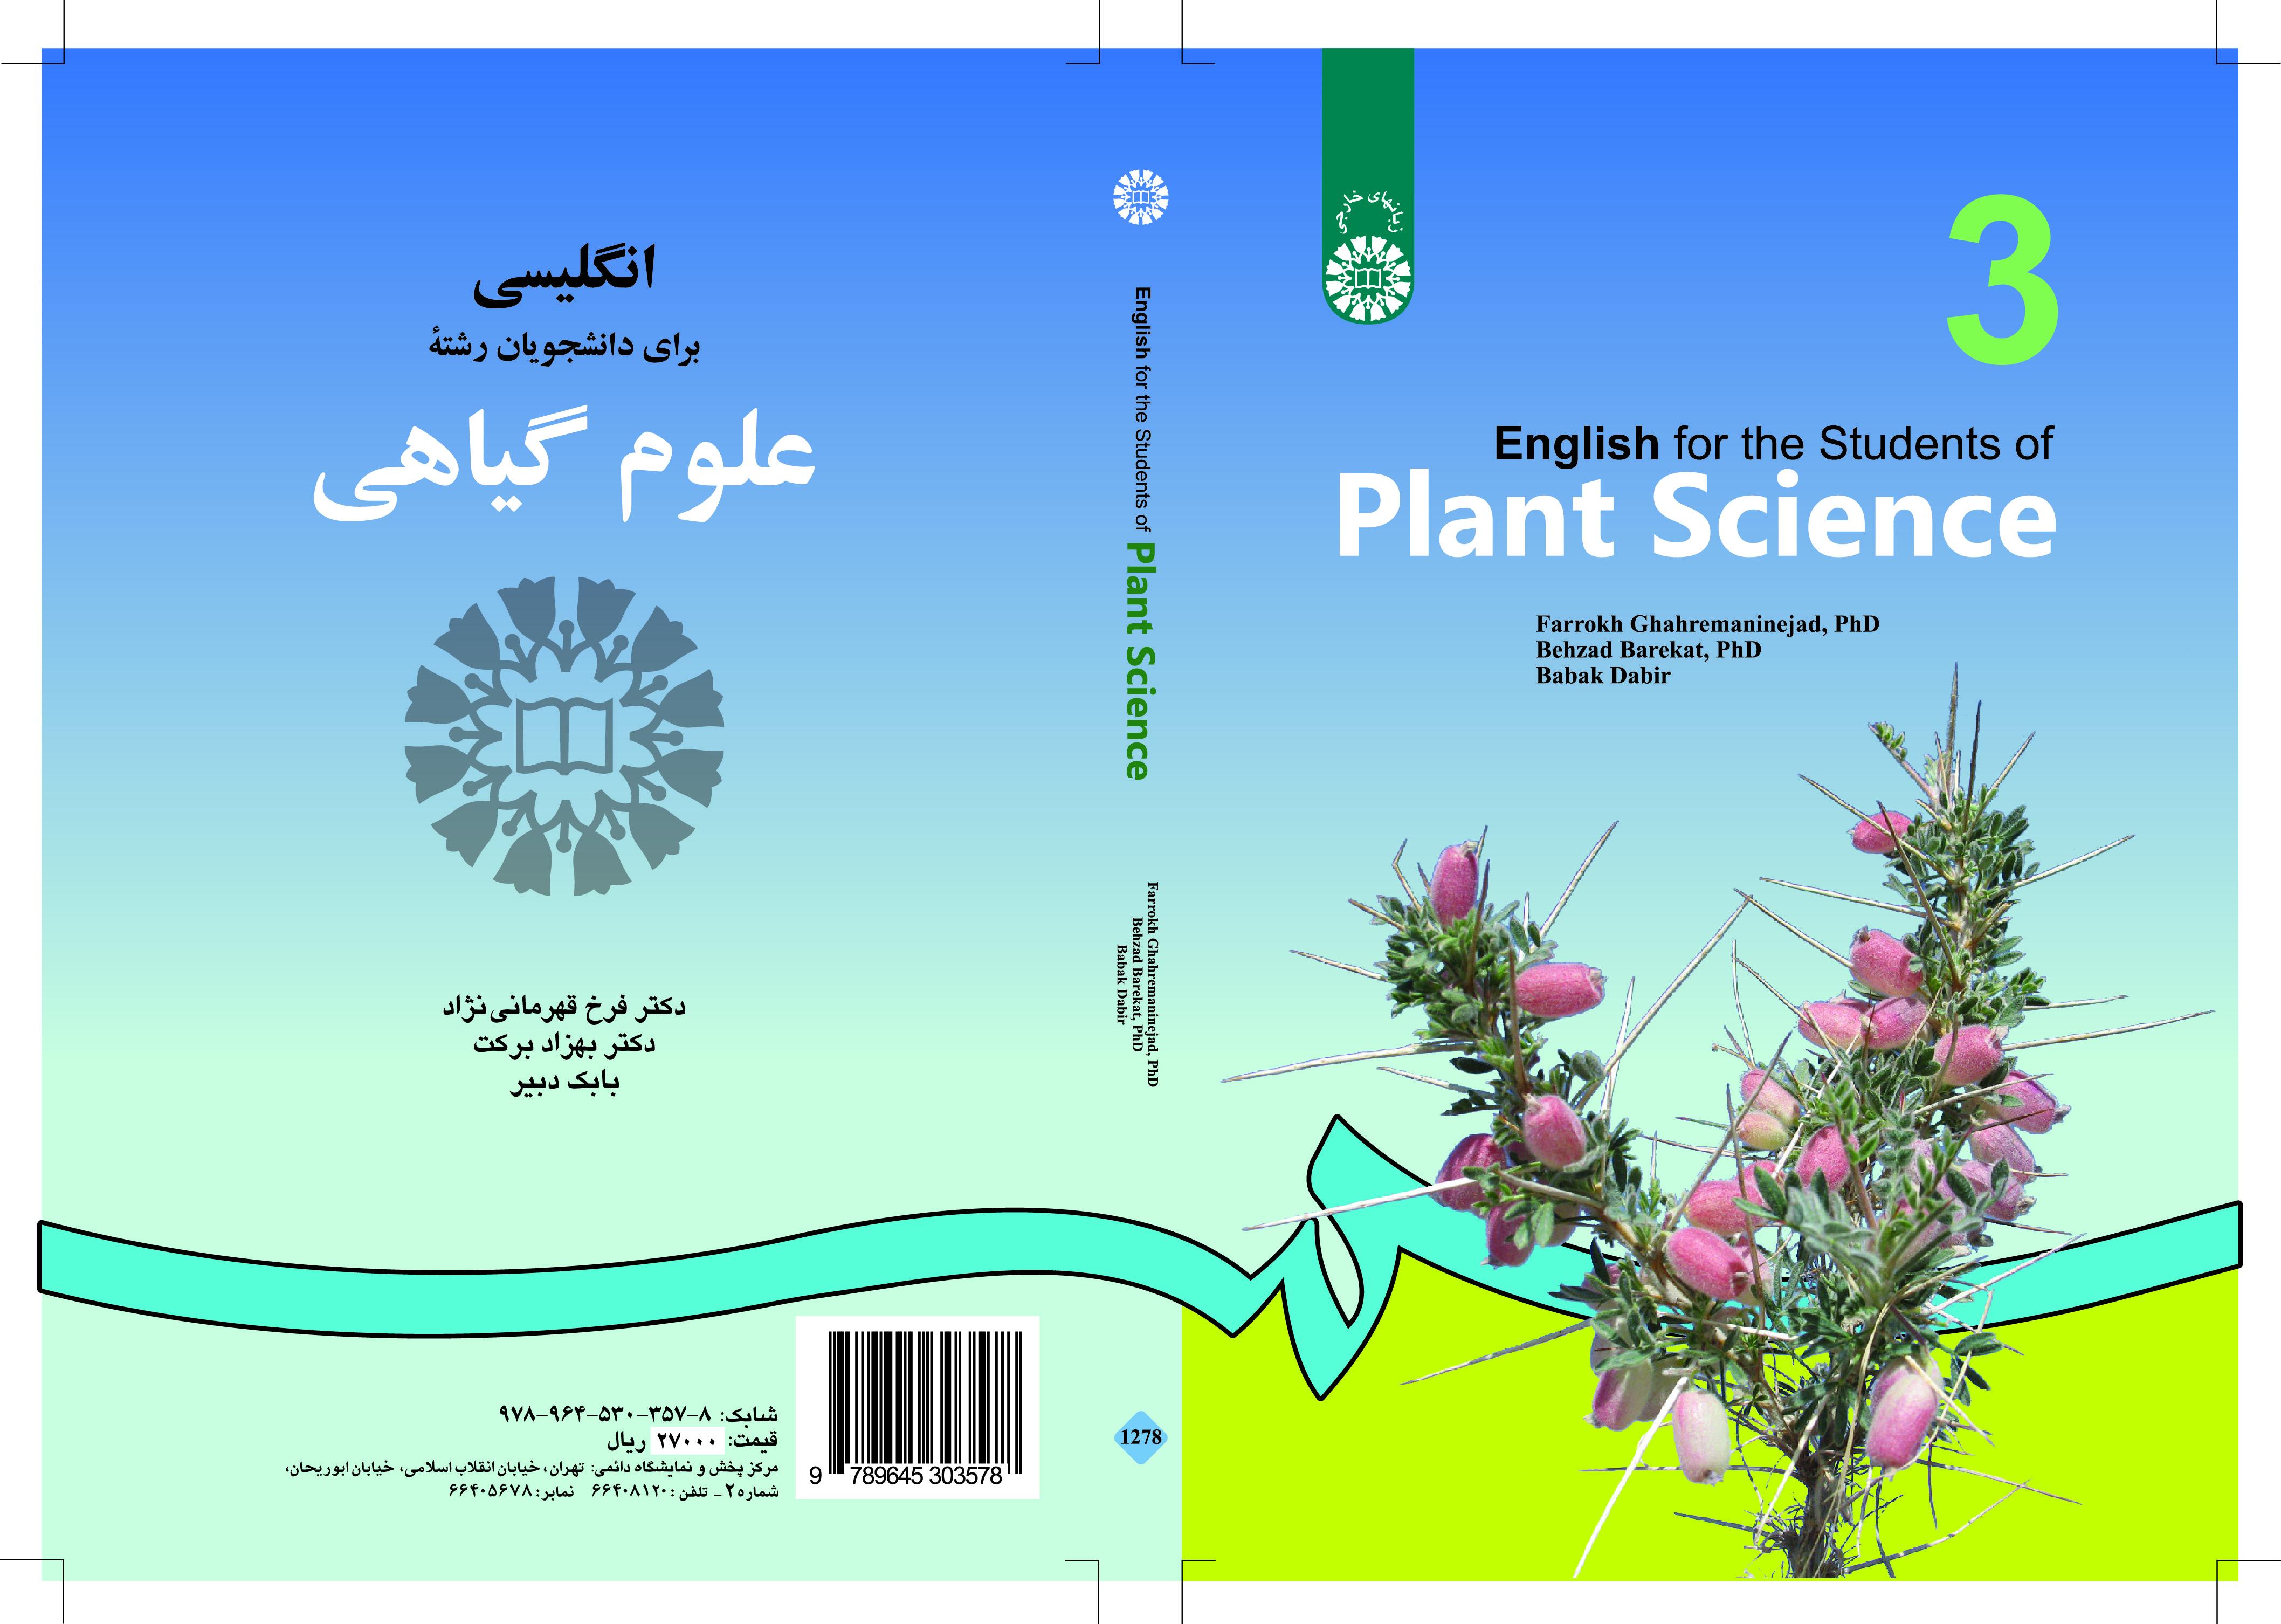 الإنجليزية لطلاب قسم علم النبات